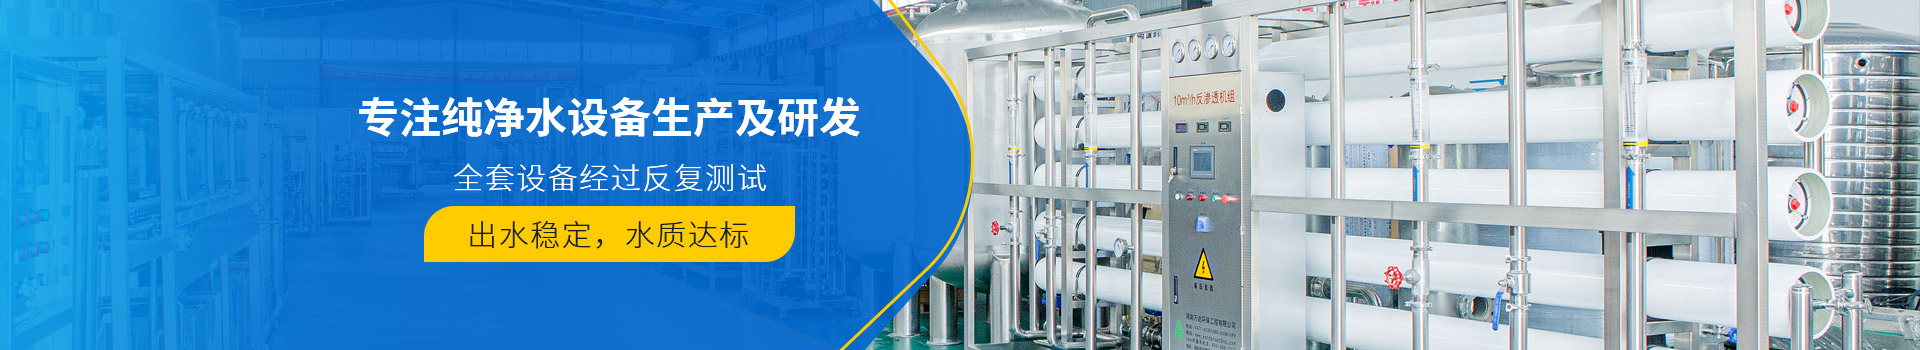 桶装水罐装设备-武汉纯水设备厂家 (PC+WAP)-纯净水设备生产销售